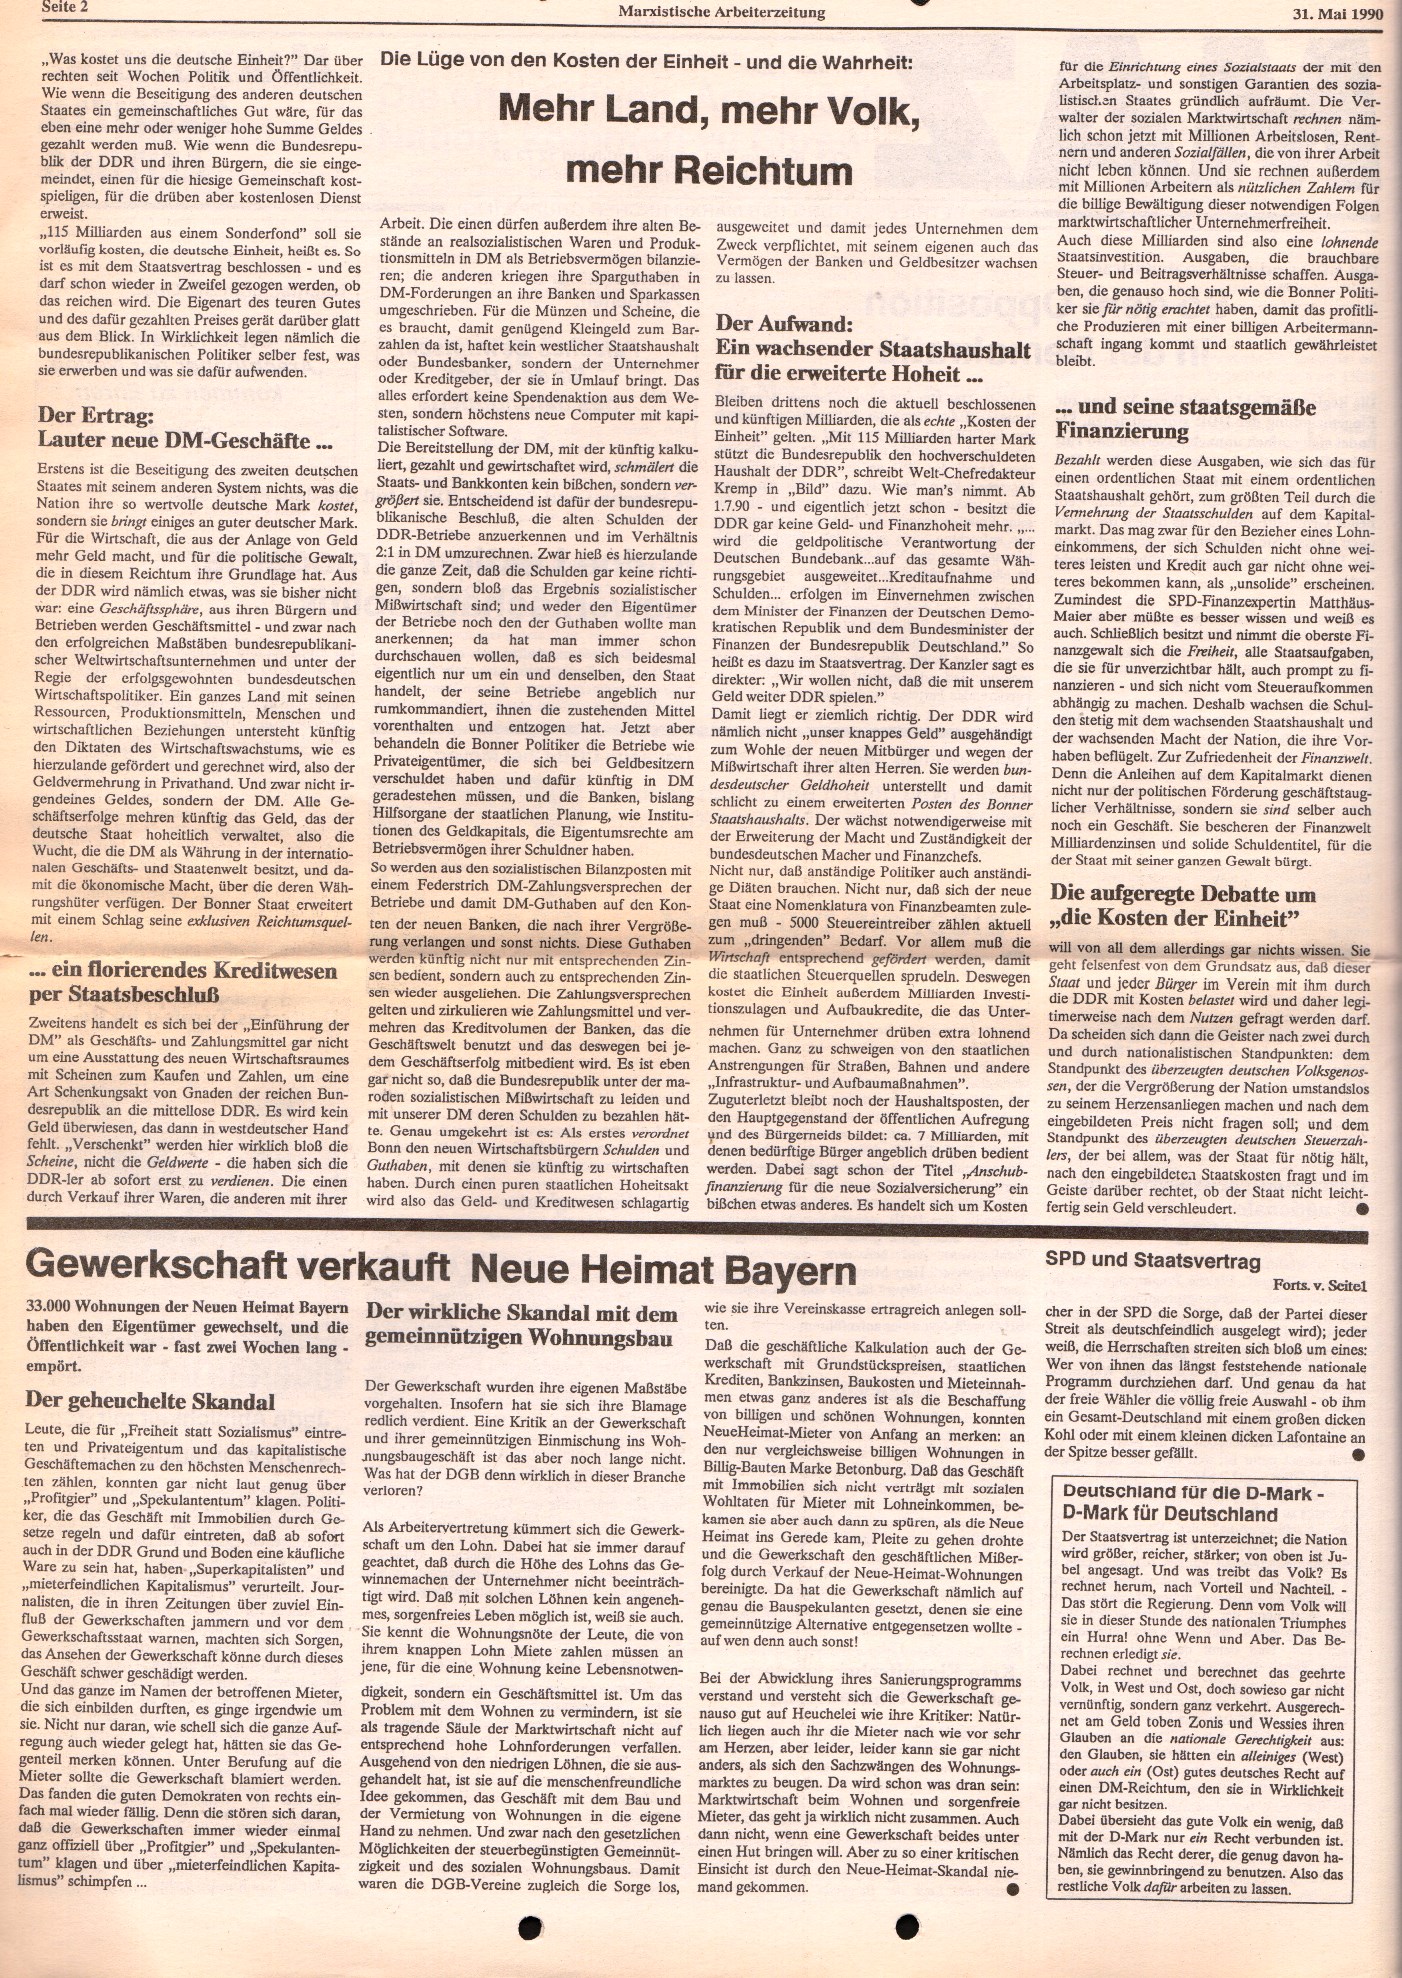 Ruhrgebiet_MG_Marxistische_Arbeiterzeitung_19900531_02